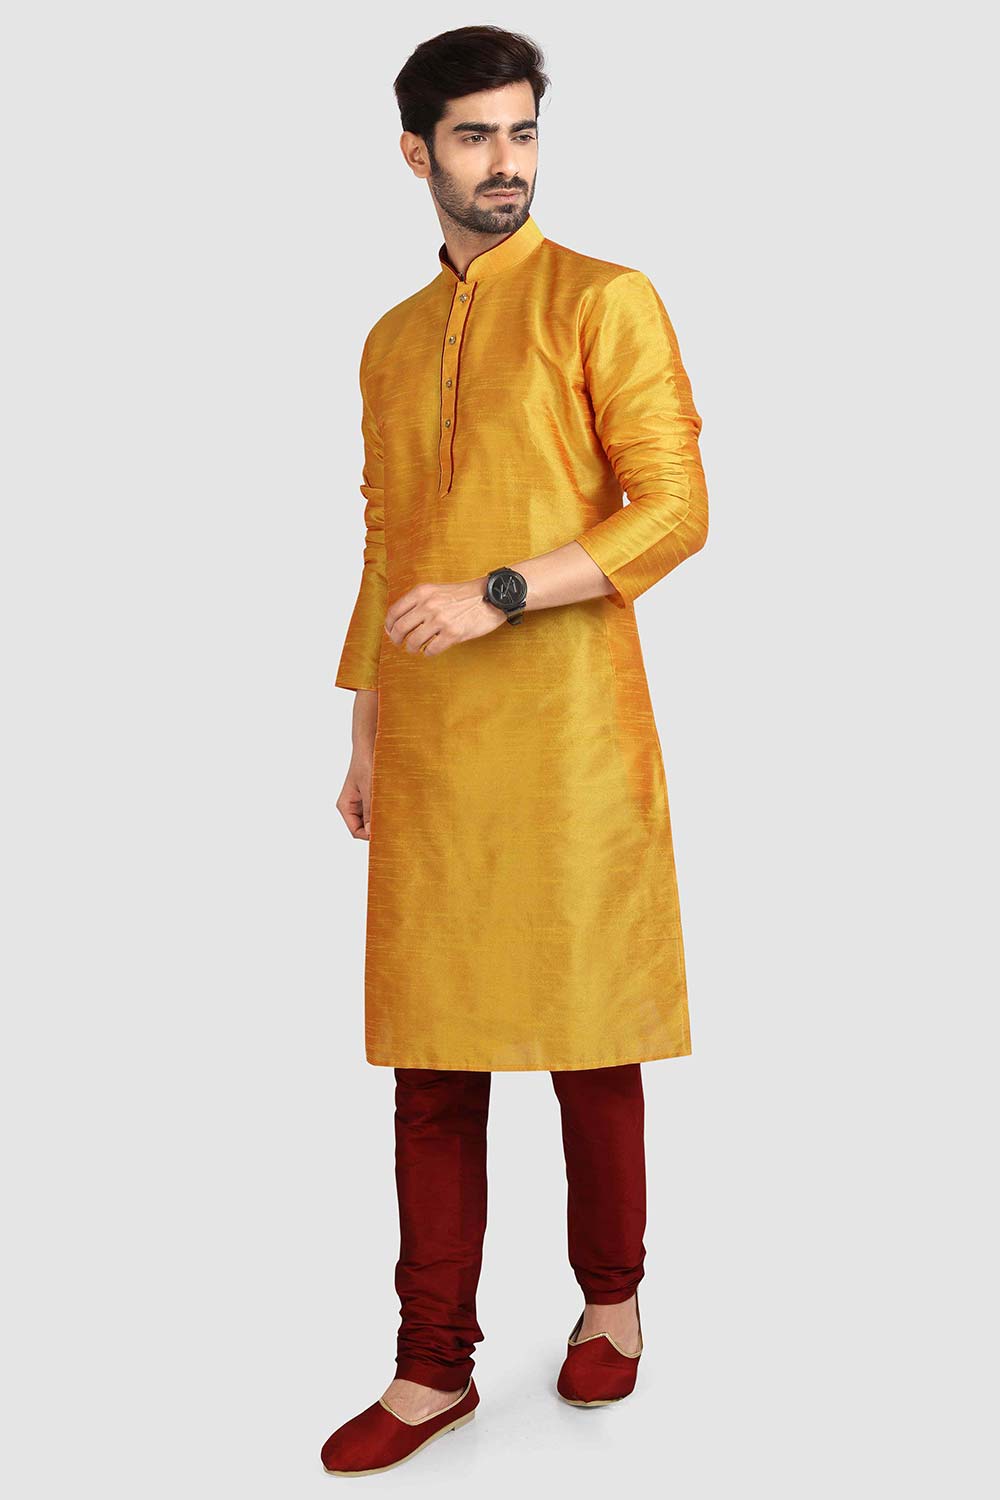 Buy Yellow Art Dupion Silk Plain Kurta Pajama Online - Karmaplace